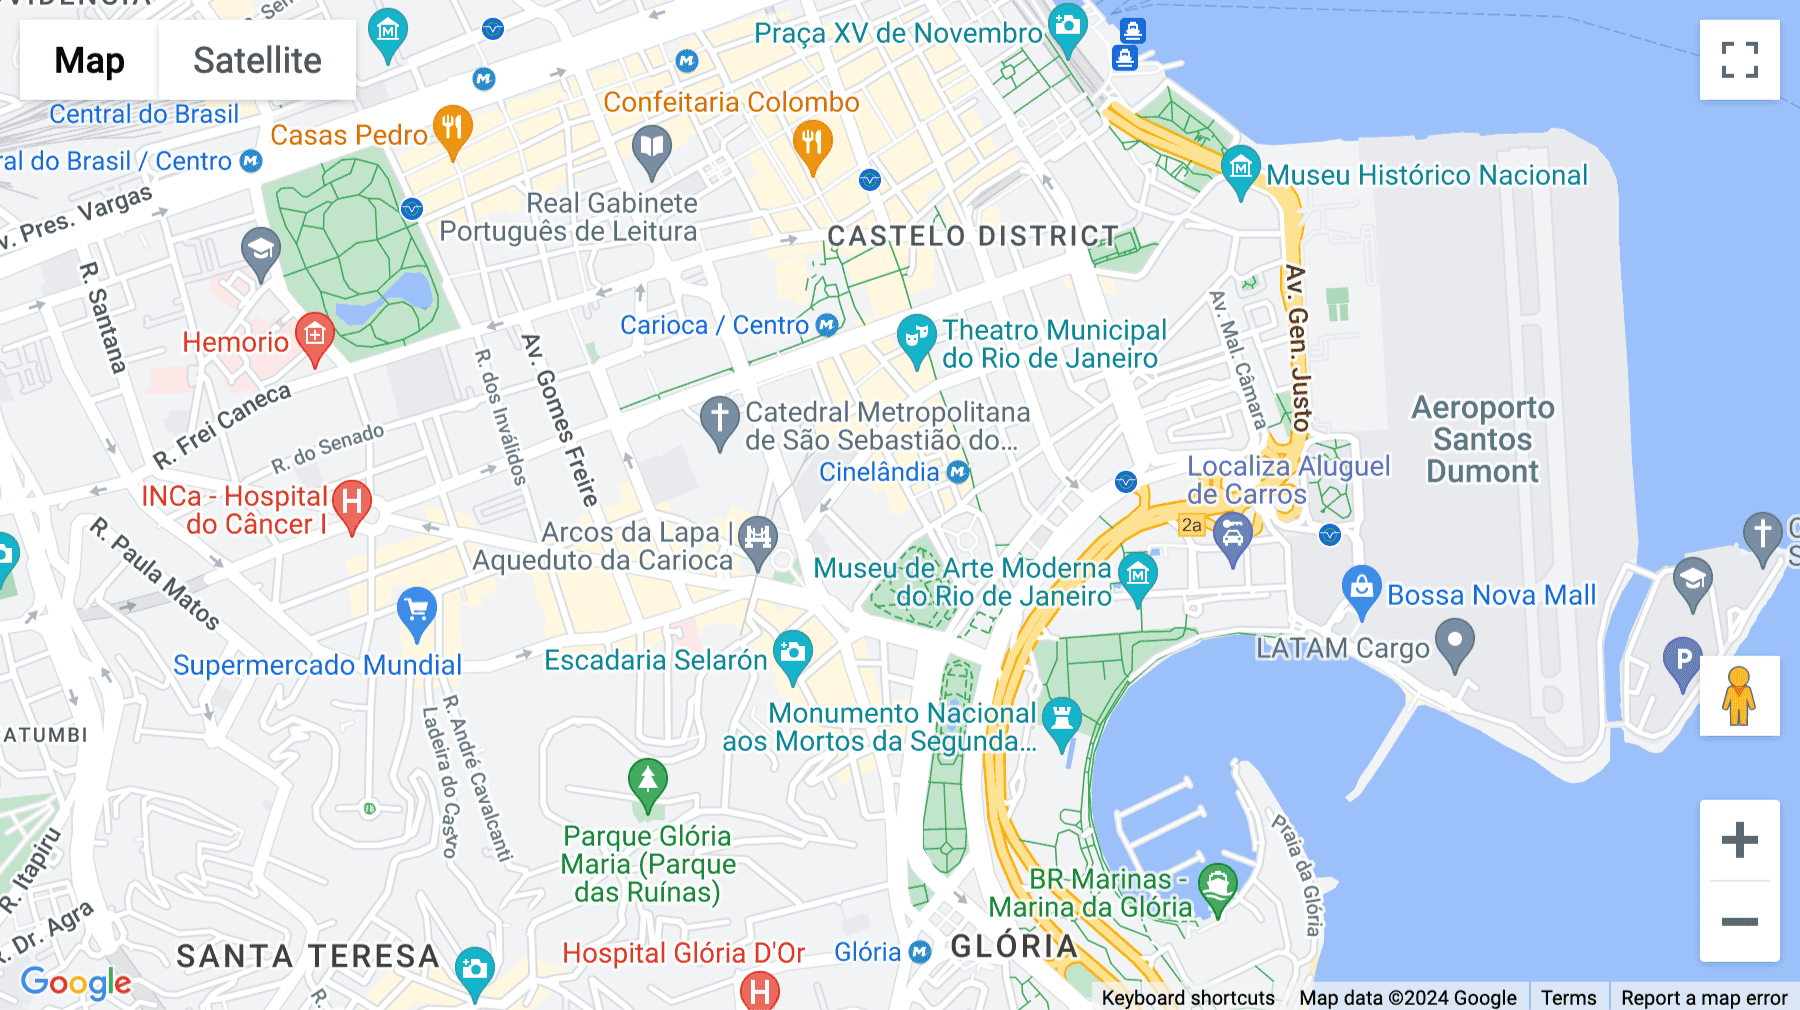 Click for interative map of Rua do Passeio, 38, 38, Rio de Janeiro